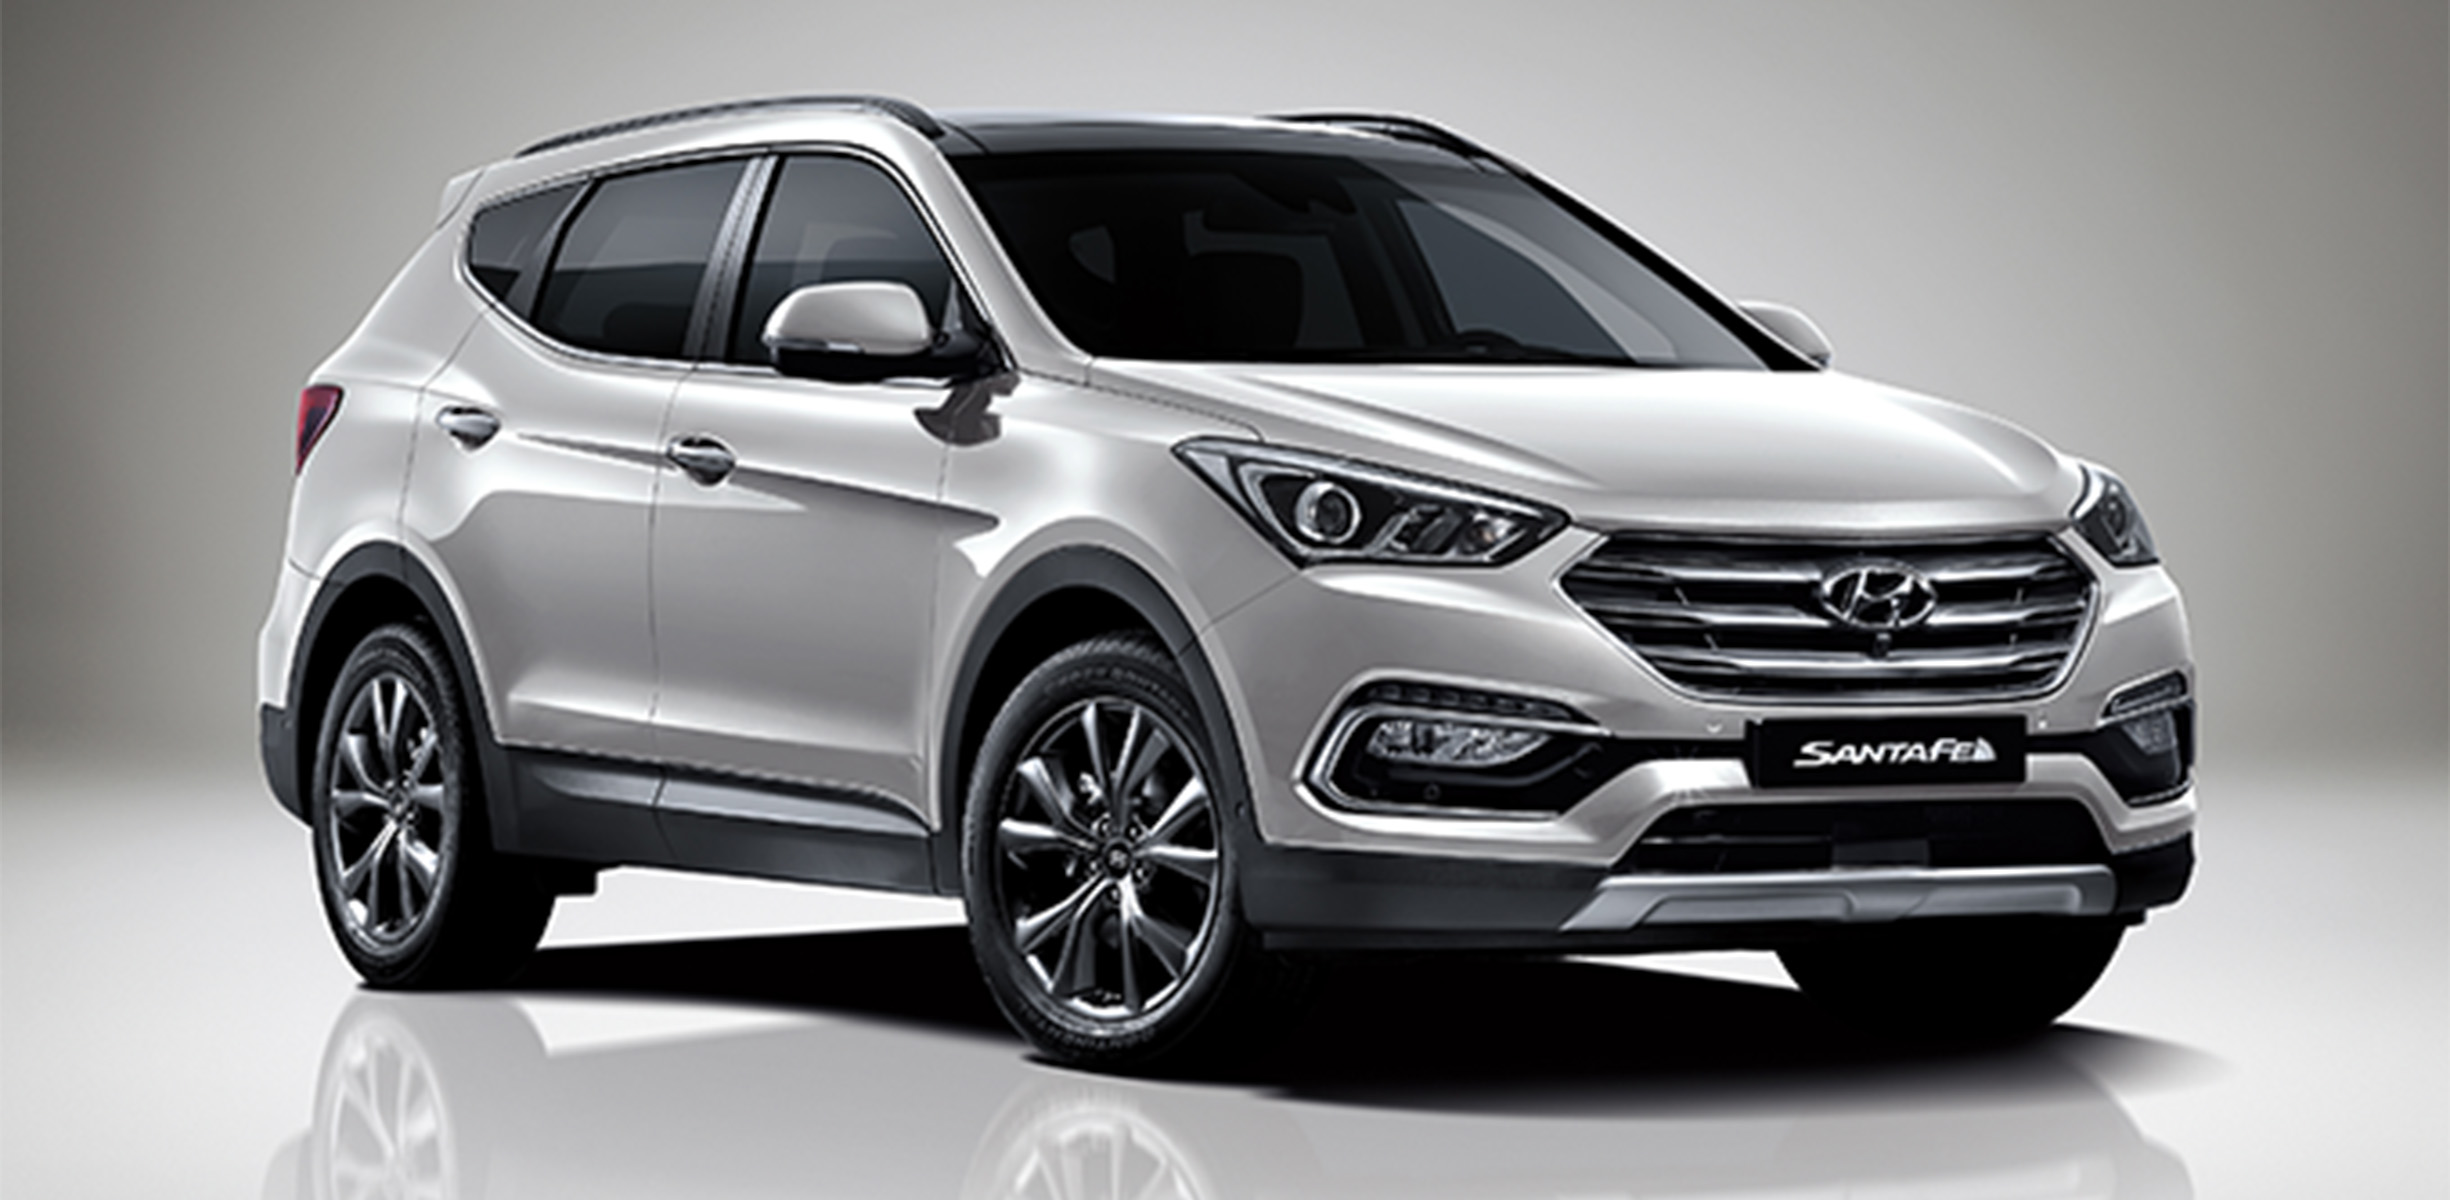 Hyundai Santa Fe facelift unveiled in Korea Photos (1 of 3)